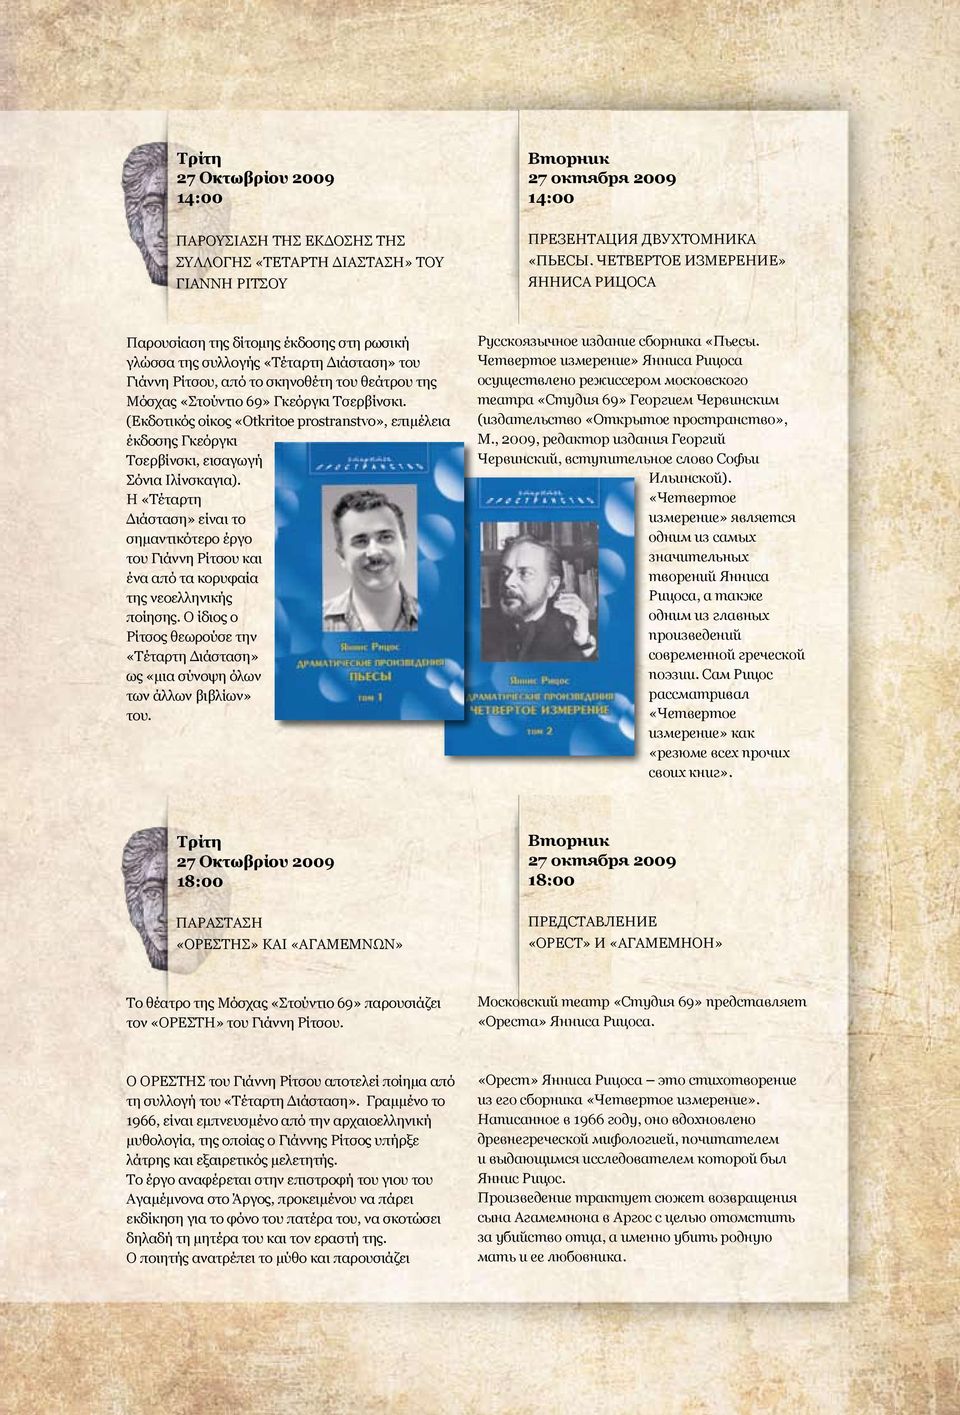 Τσερβίνσκι. (Εκδοτικός οίκος «Otkritoe prostranstvo», επιμέλεια έκδοσης Γκεόργκι Τσερβίνσκι, εισαγωγή Σόνια Ιλίνσκαγια).